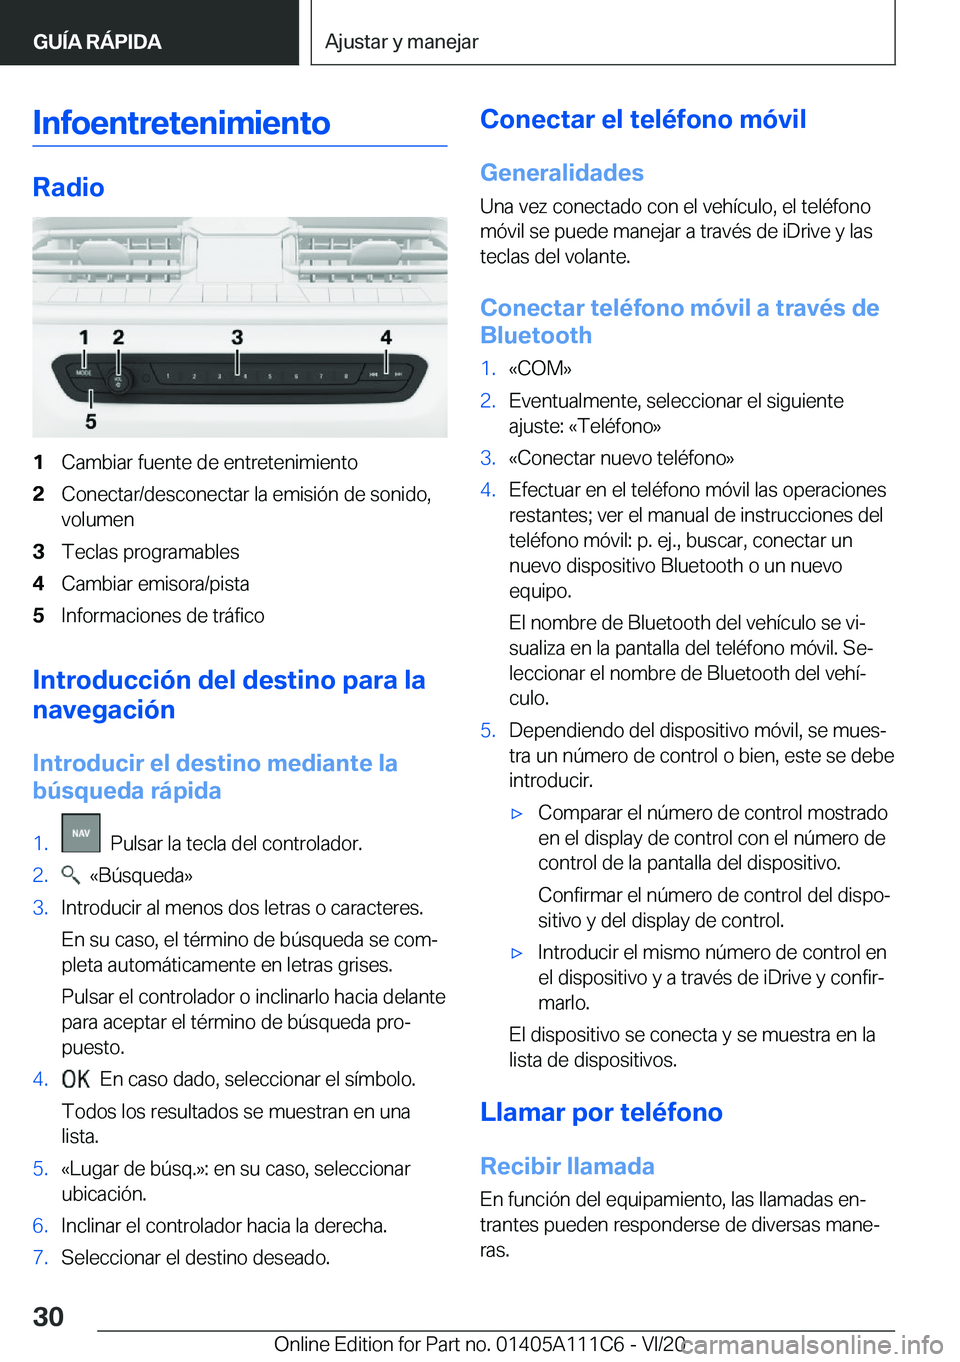 BMW 3 SERIES SEDAN PLUG-IN HYBRID 2021  Manuales de Empleo (in Spanish) �I�n�f�o�e�n�t�r�e�t�e�n�i�m�i�e�n�t�o
�R�a�d�i�o
�1�C�a�m�b�i�a�r��f�u�e�n�t�e��d�e��e�n�t�r�e�t�e�n�i�m�i�e�n�t�o�2�C�o�n�e�c�t�a�r�/�d�e�s�c�o�n�e�c�t�a�r��l�a��e�m�i�s�i�